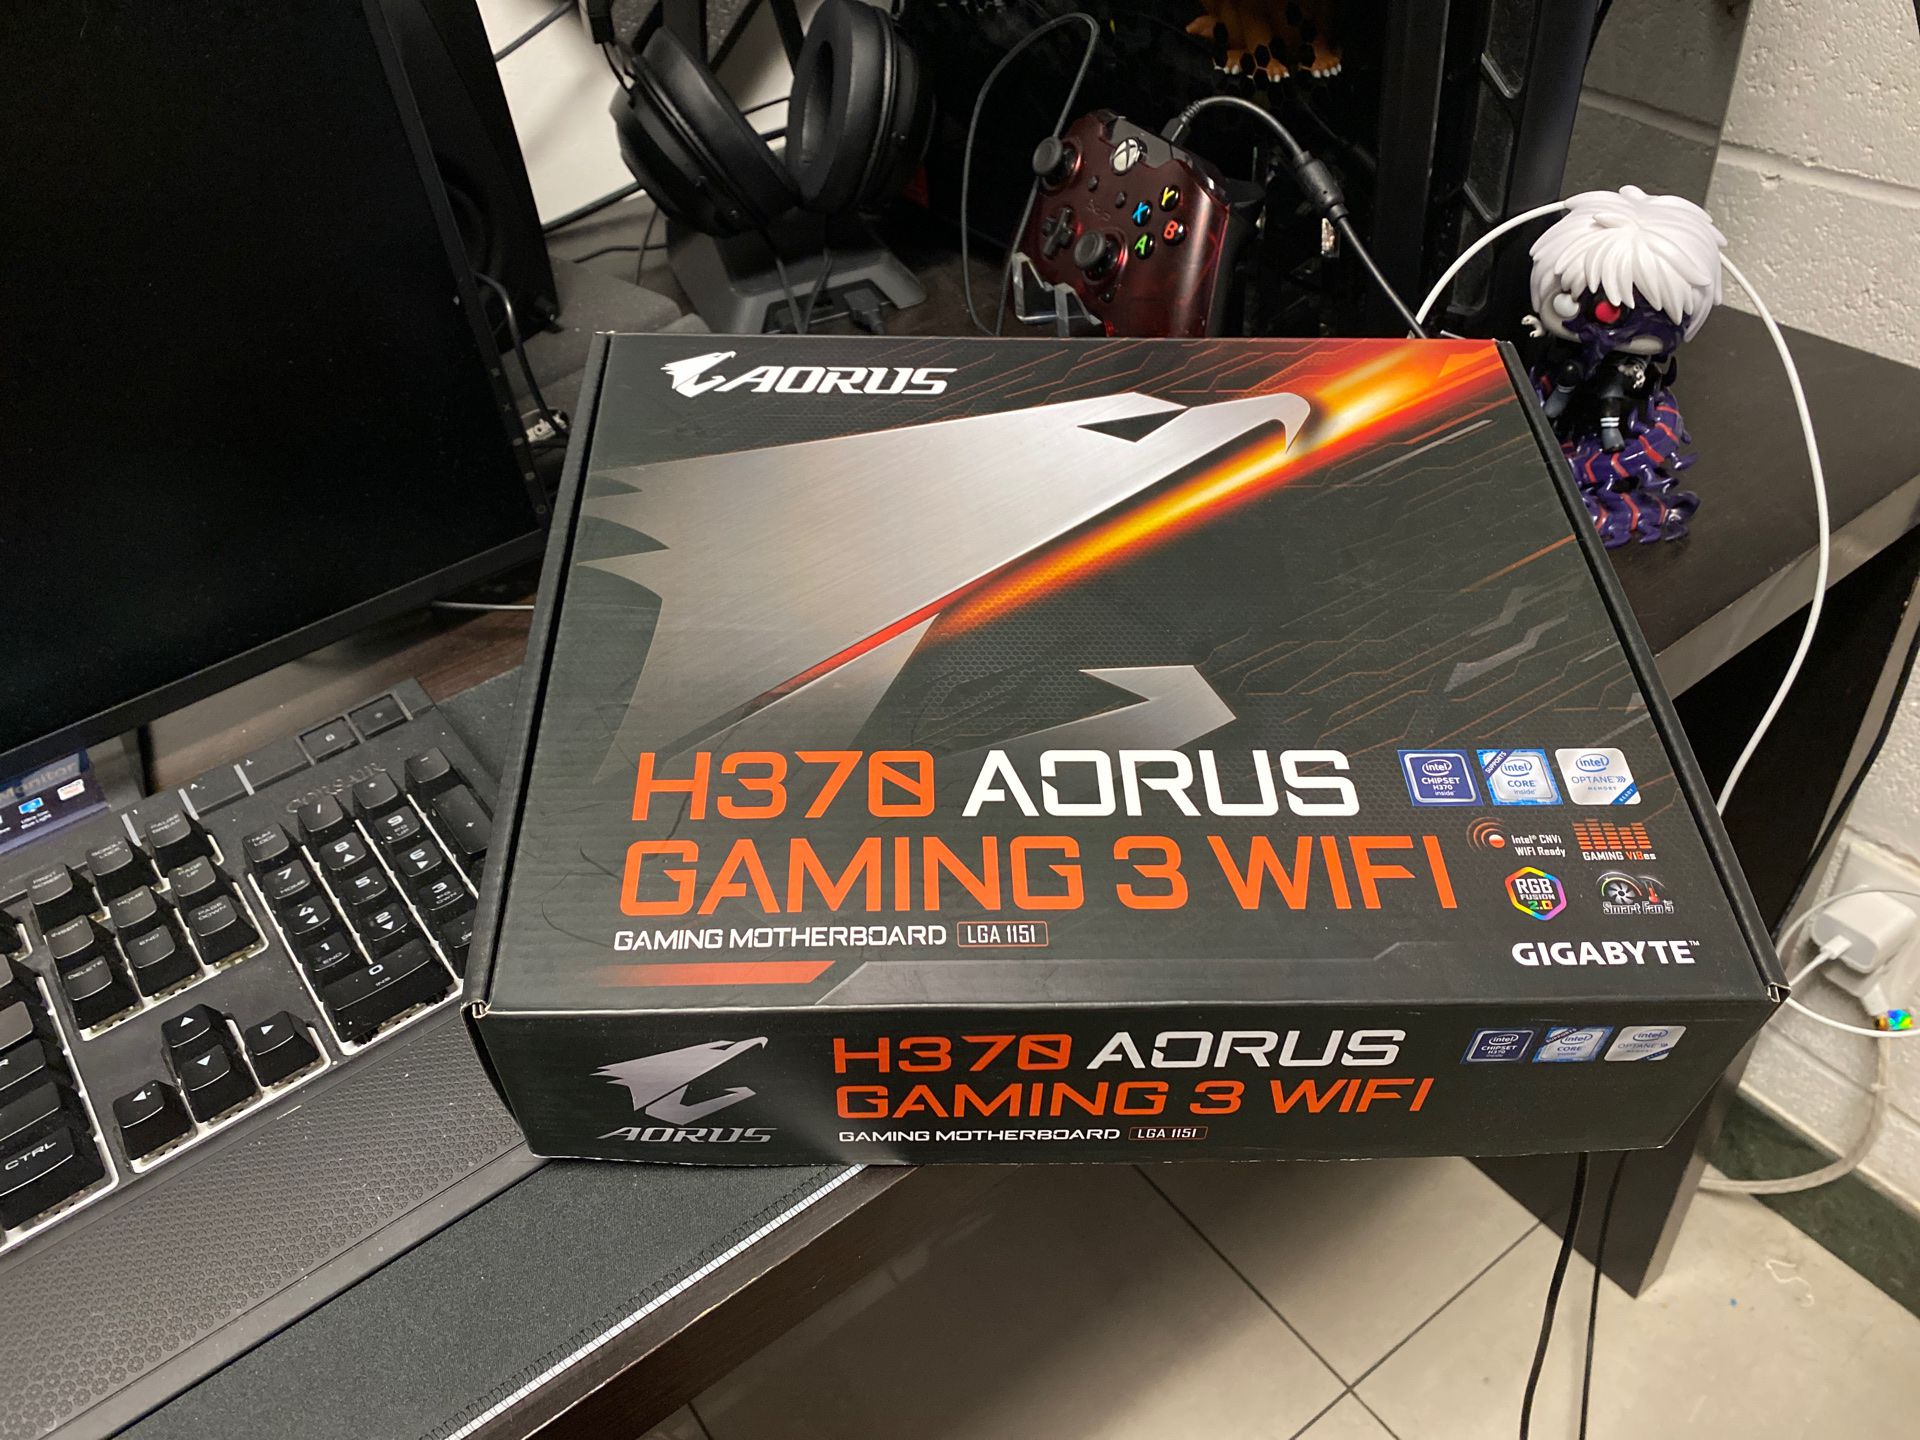 H370 AORUS Gaming 3 WiFi